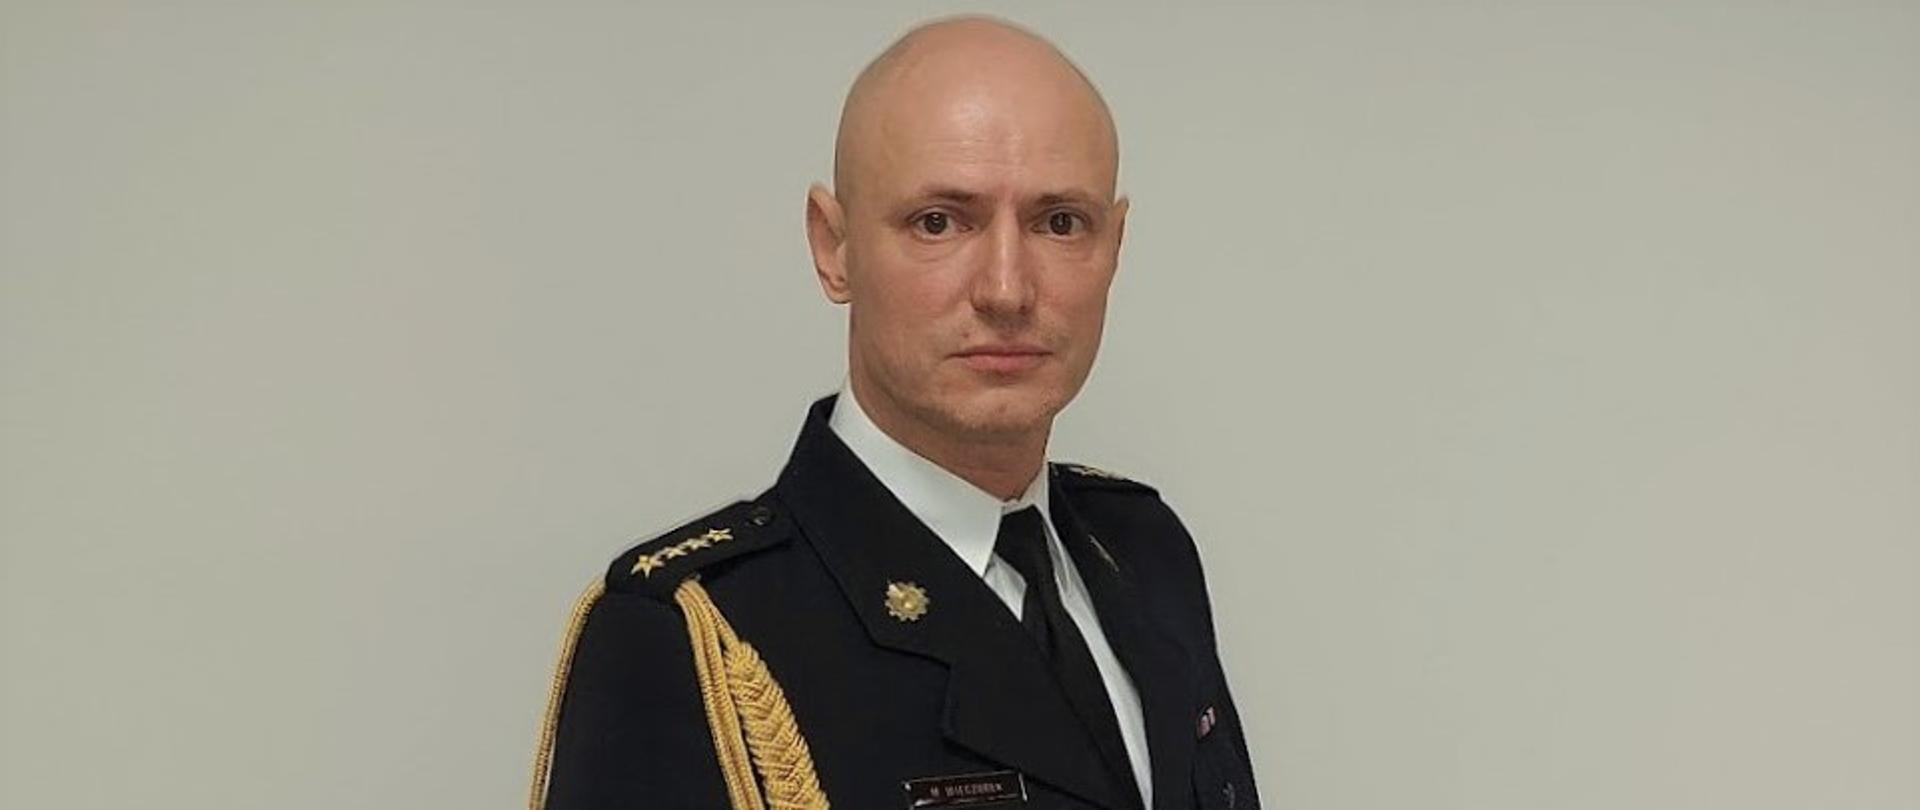 Oficer w mundurze wyjściowym ze sznurem, portret en face.